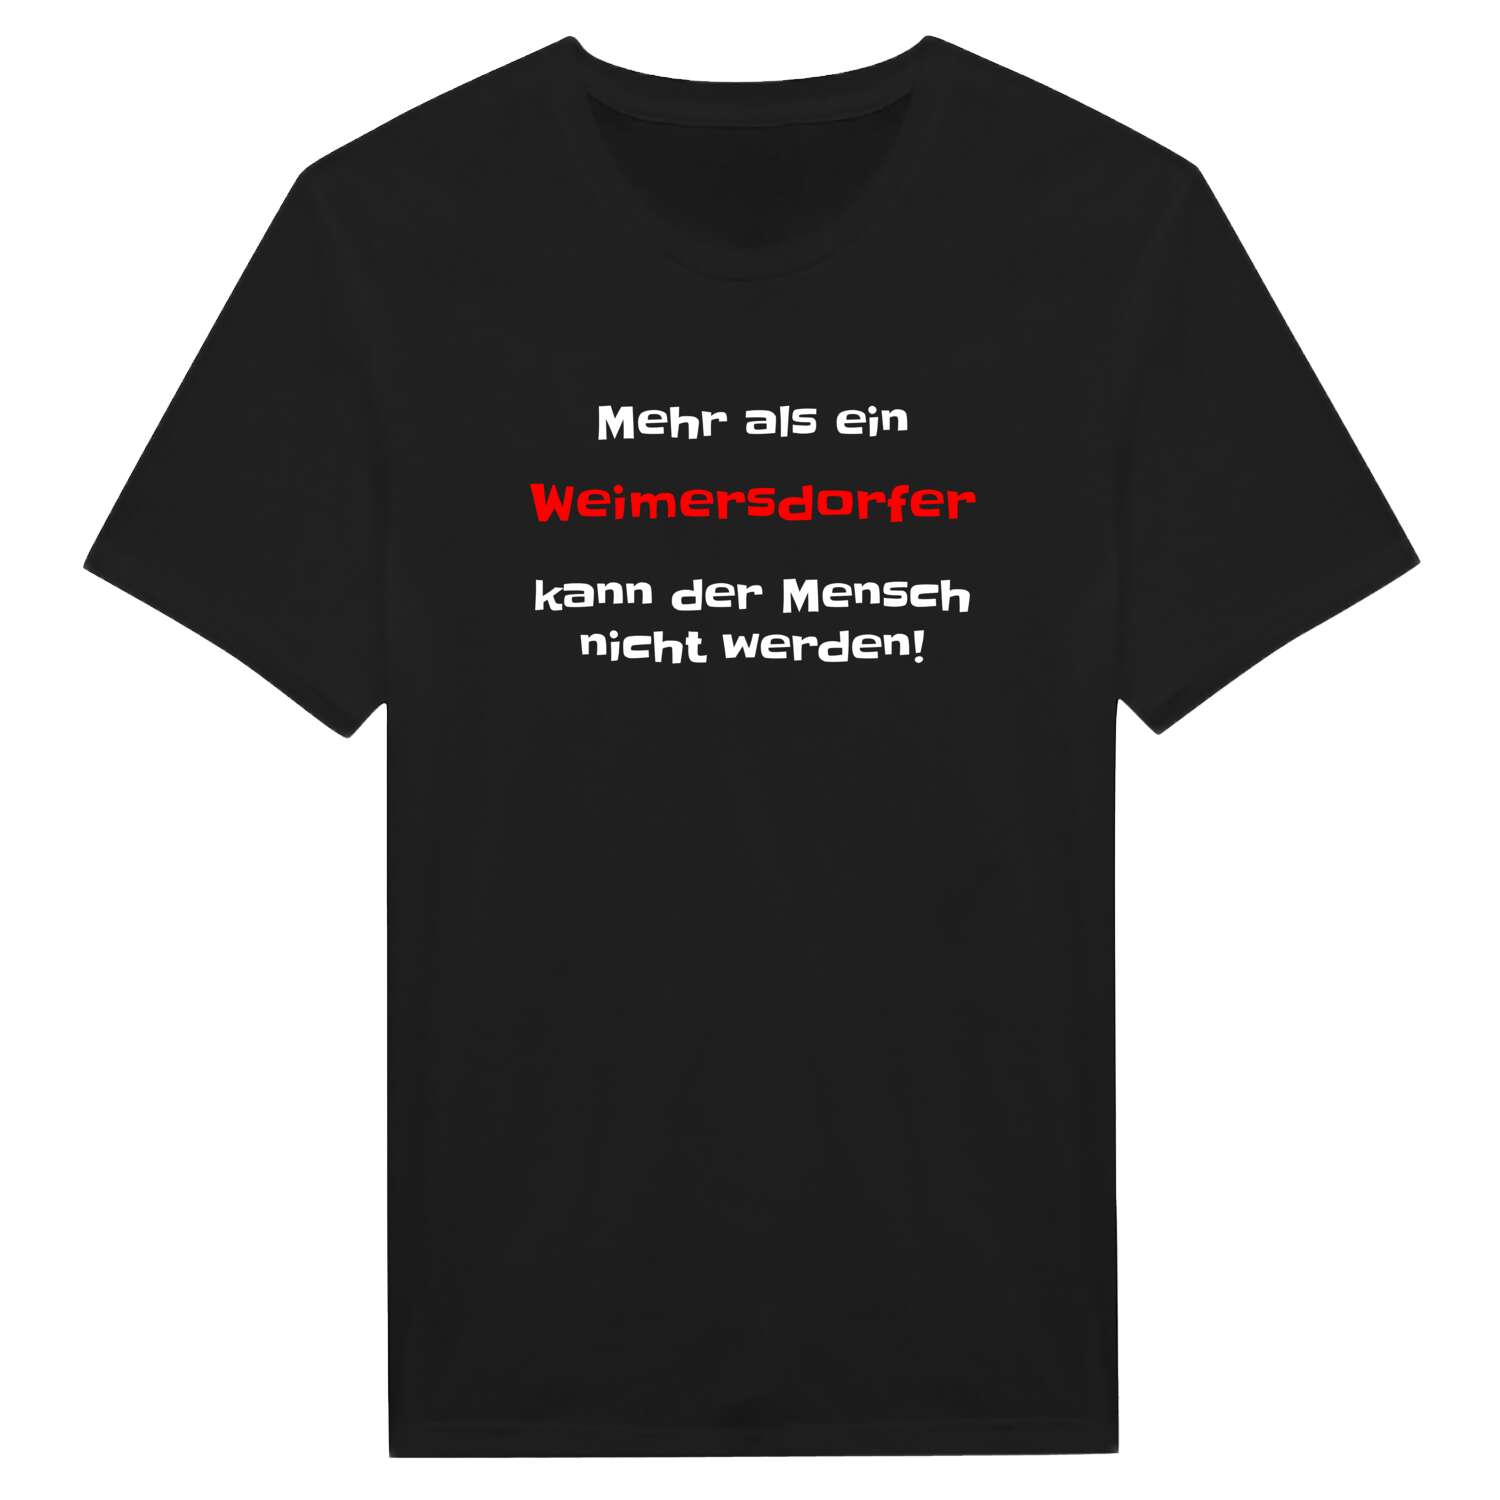 Weimersdorf T-Shirt »Mehr als ein«